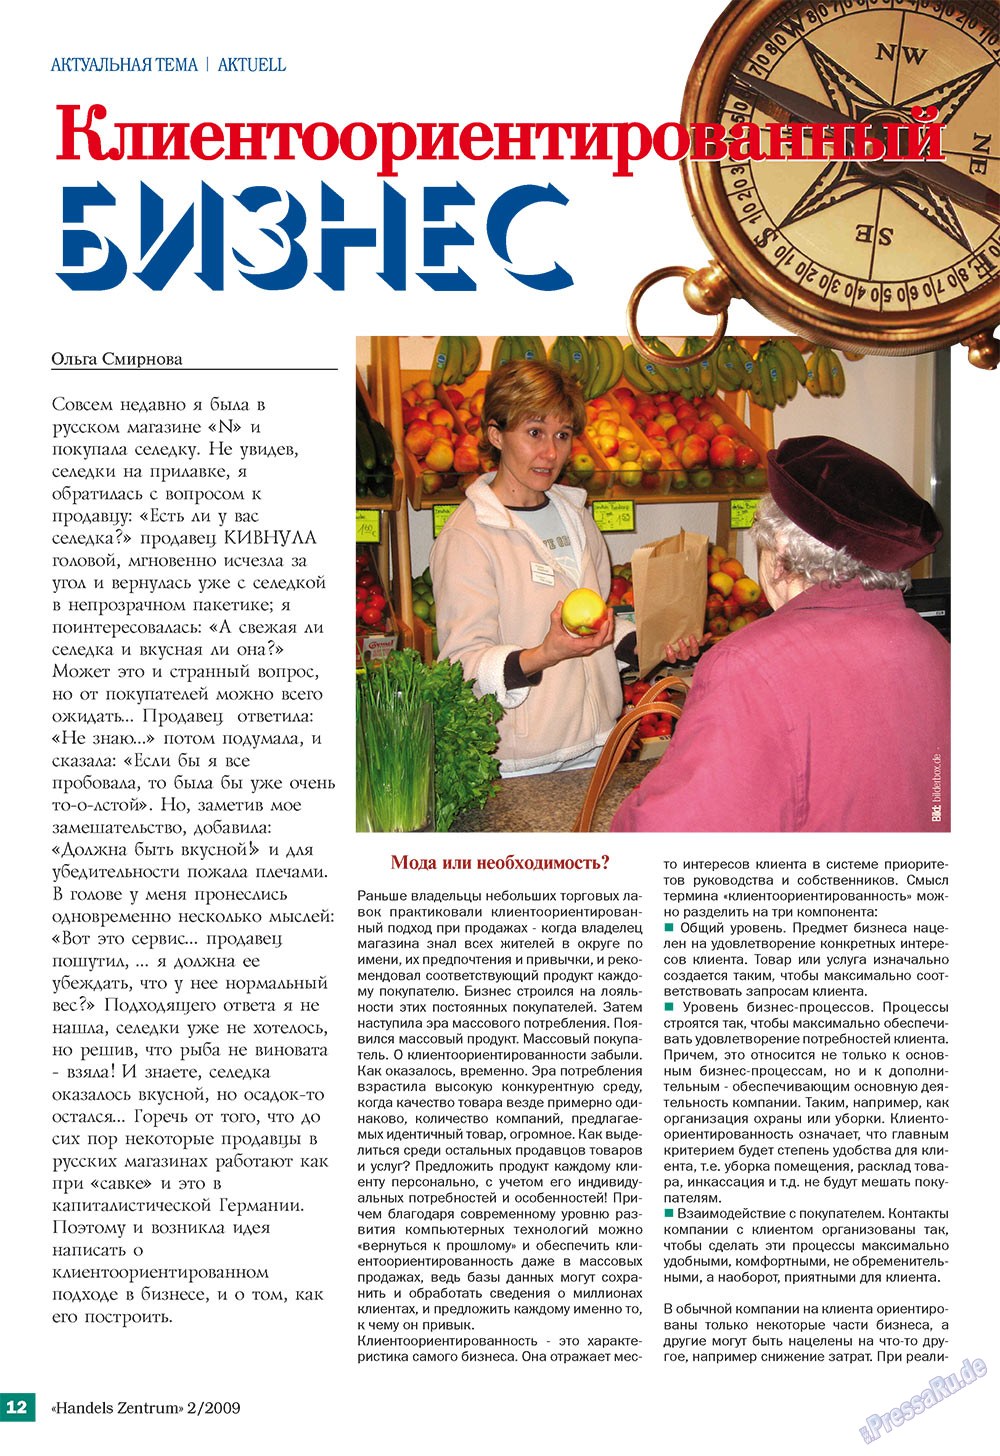 Handels Zentrum (Zeitschrift). 2009 Jahr, Ausgabe 2, Seite 12